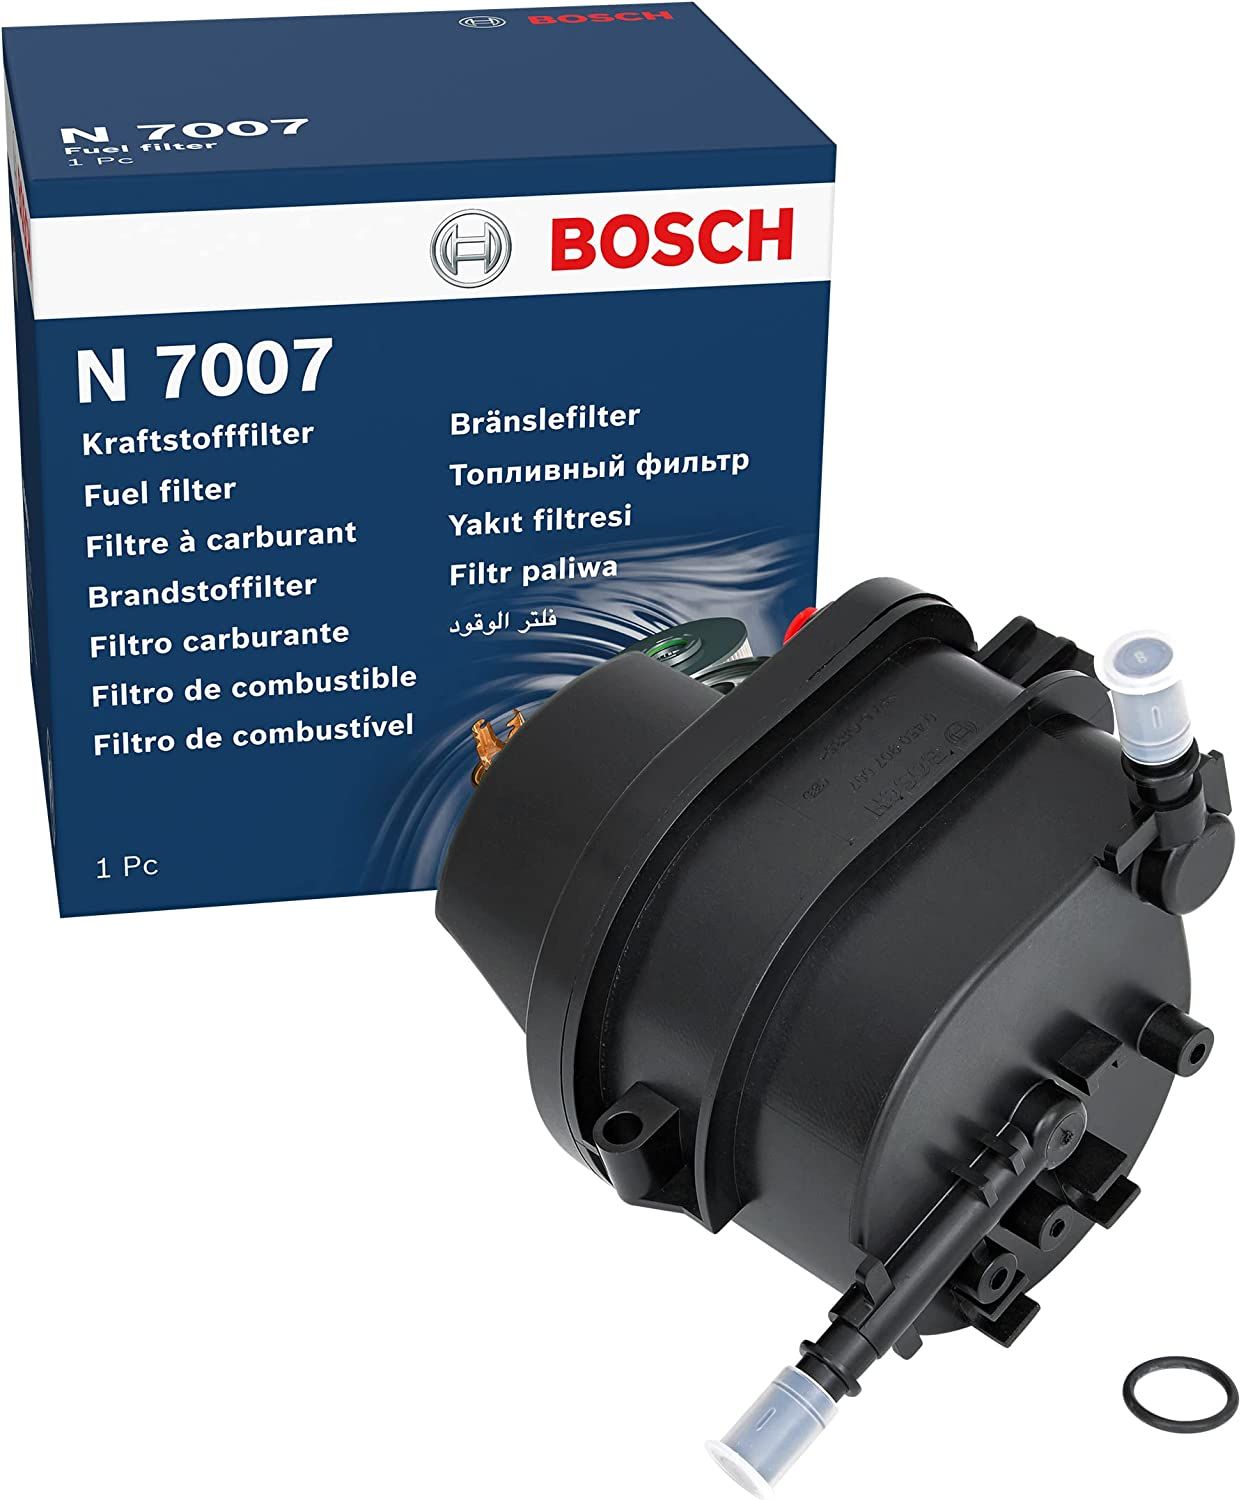 Peugeot 206 1.4 Hdi Dizel Mazot Filtresi Muşursuz Sensörsüz Bosch Marka Alman Ürünü 0450907007